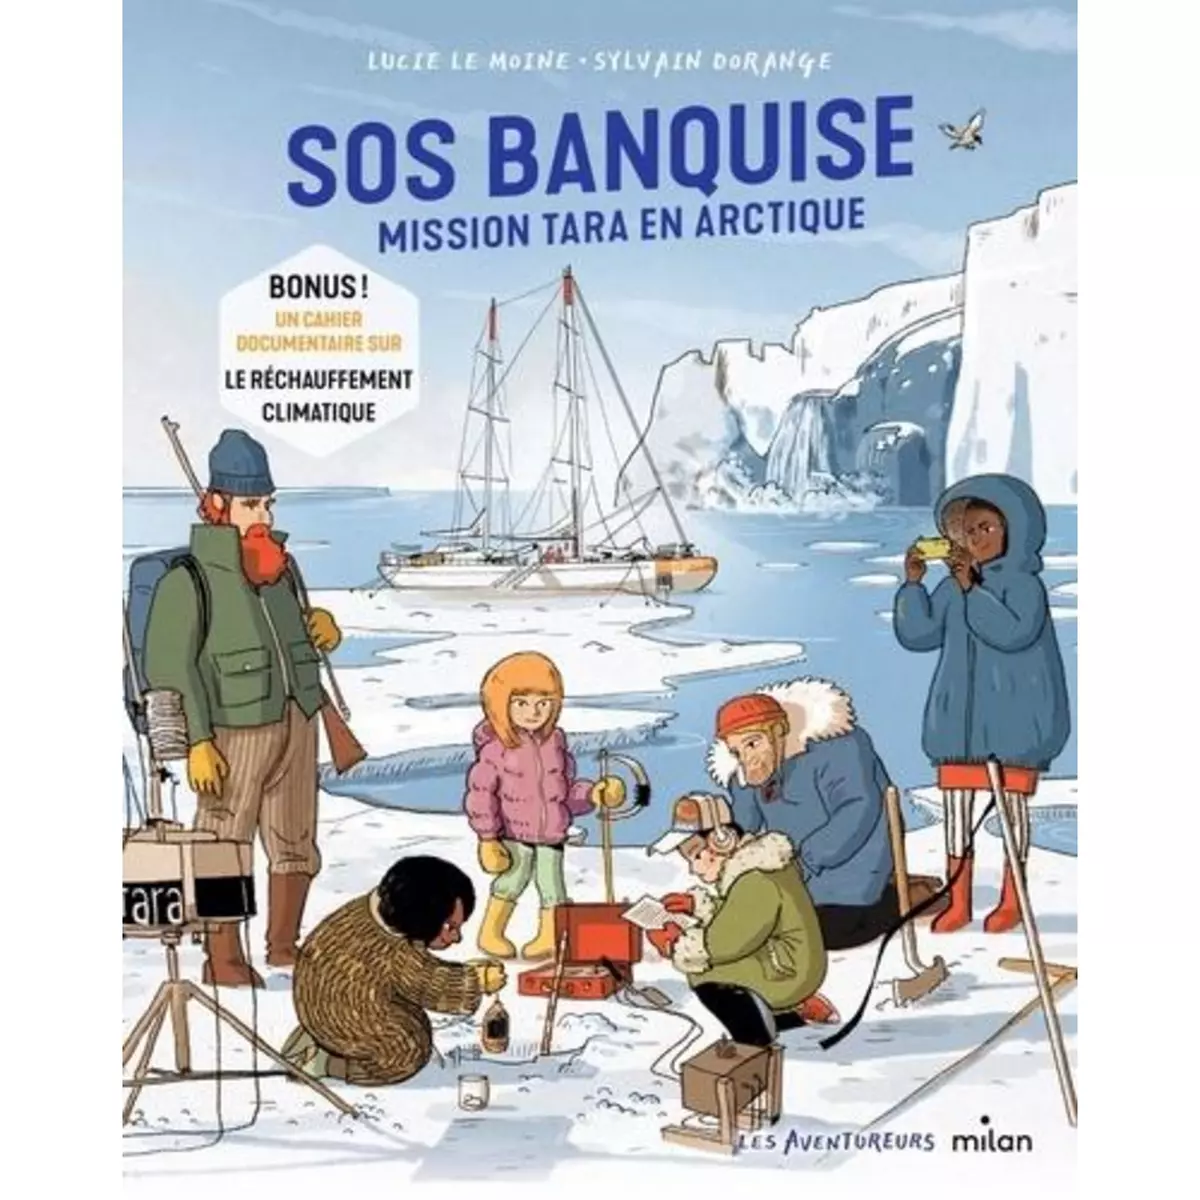  SOS BANQUISE. MISSION TARA EN ARCTIQUE, Le Moine Lucie